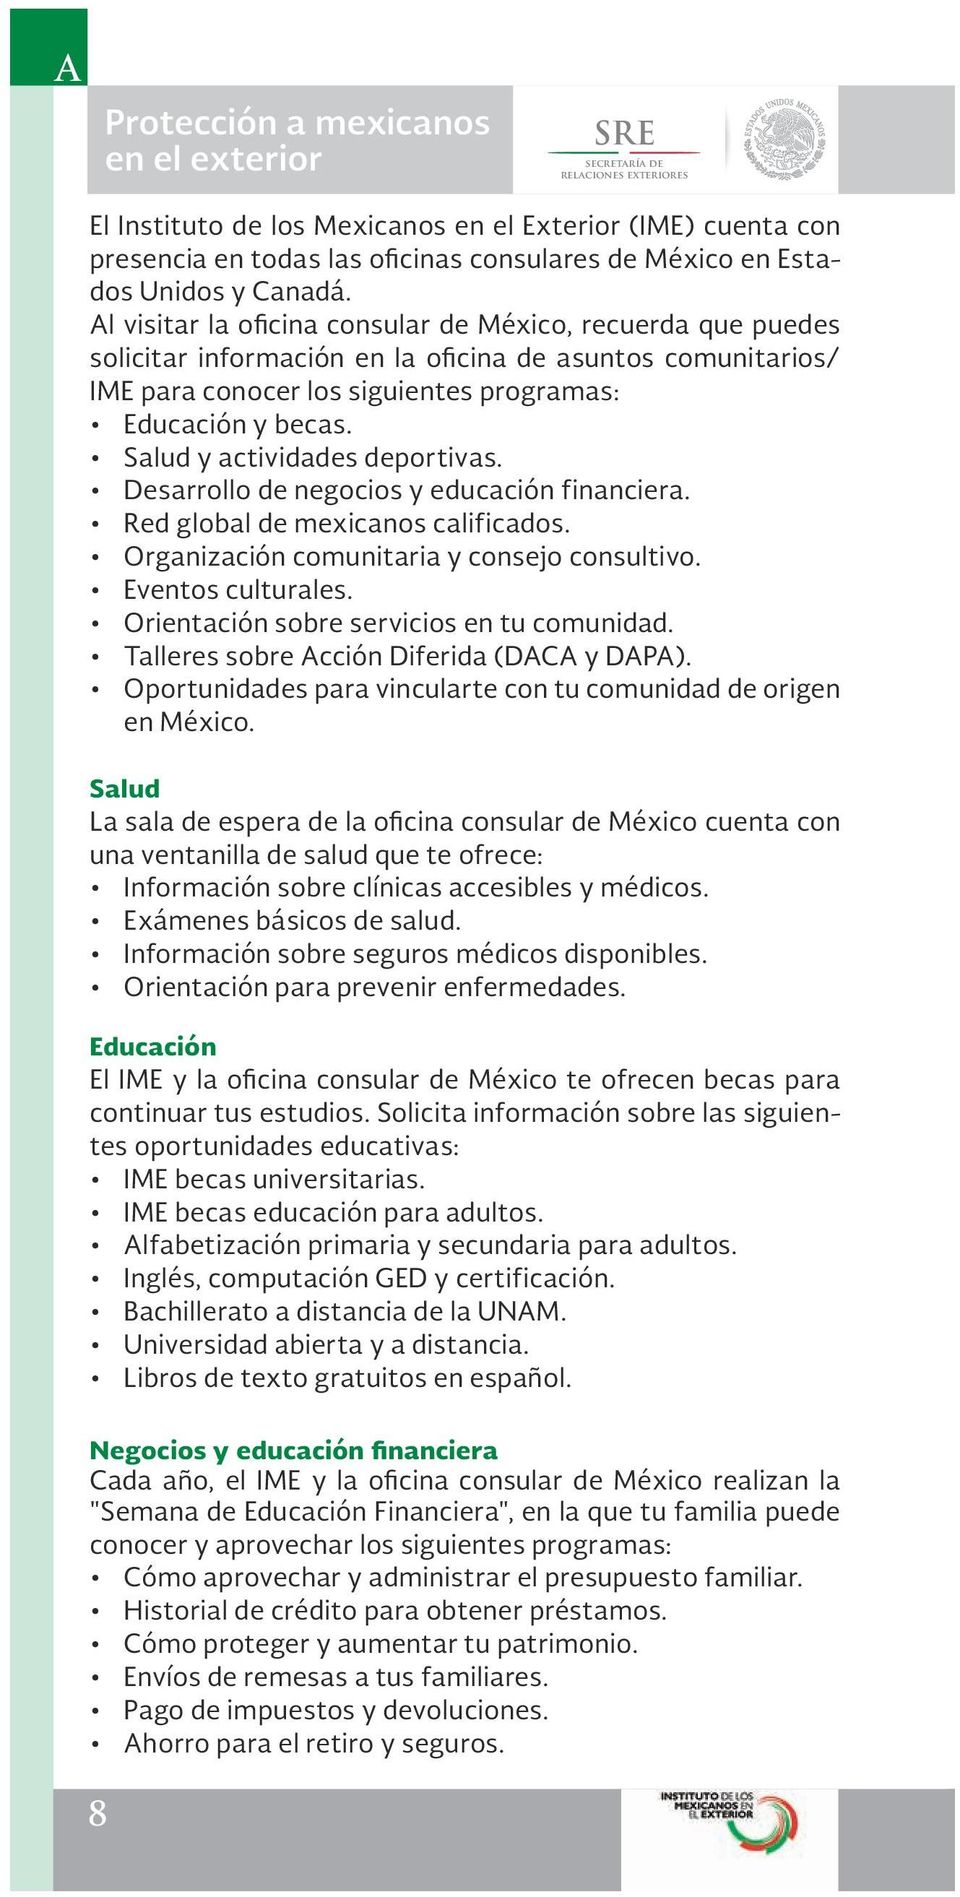 Al visitar la oficina consular de México, recuerda que puedes solicitar información en la oficina de asuntos comunitarios/ IME para conocer los siguientes programas: Educación y becas.